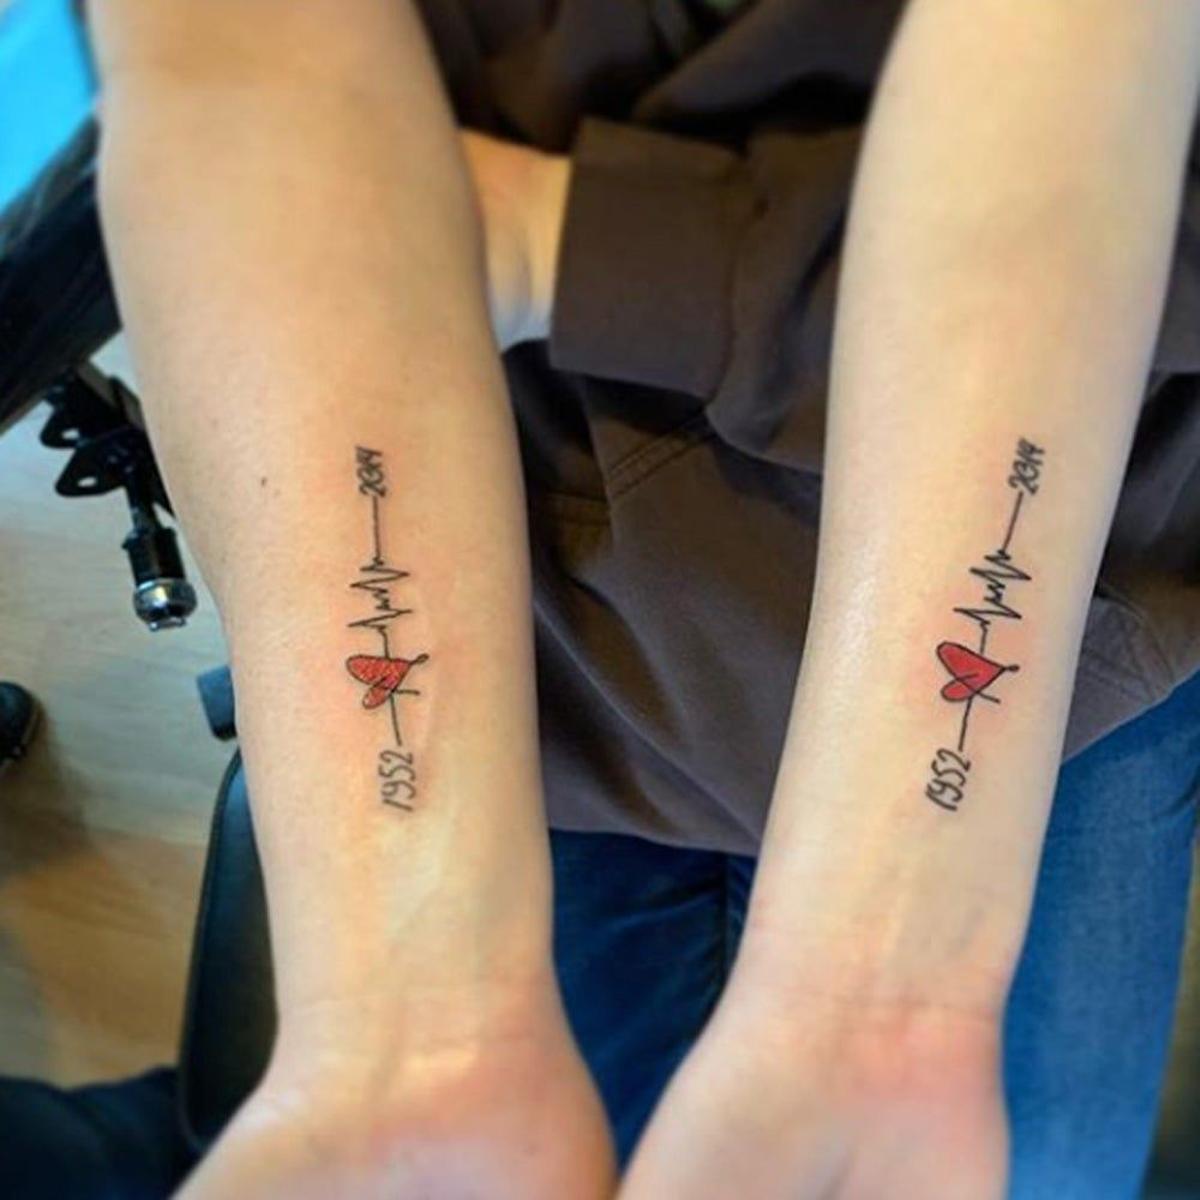 Tatuaje con mamá: representar lo mucho que os queréis